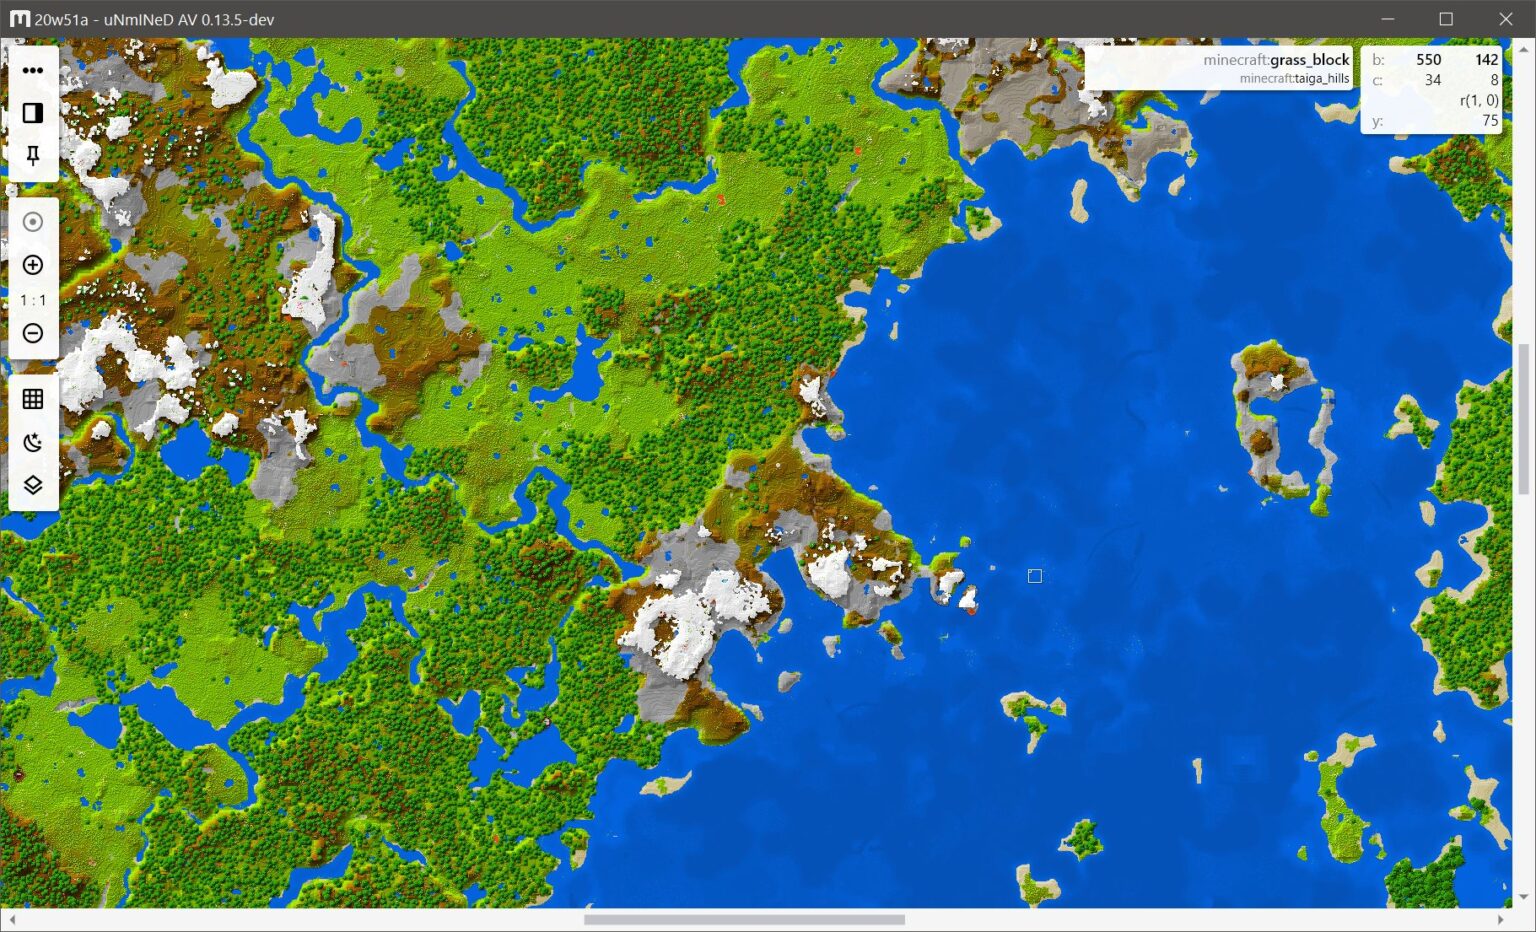 Minecraft 2D Minecraft Map